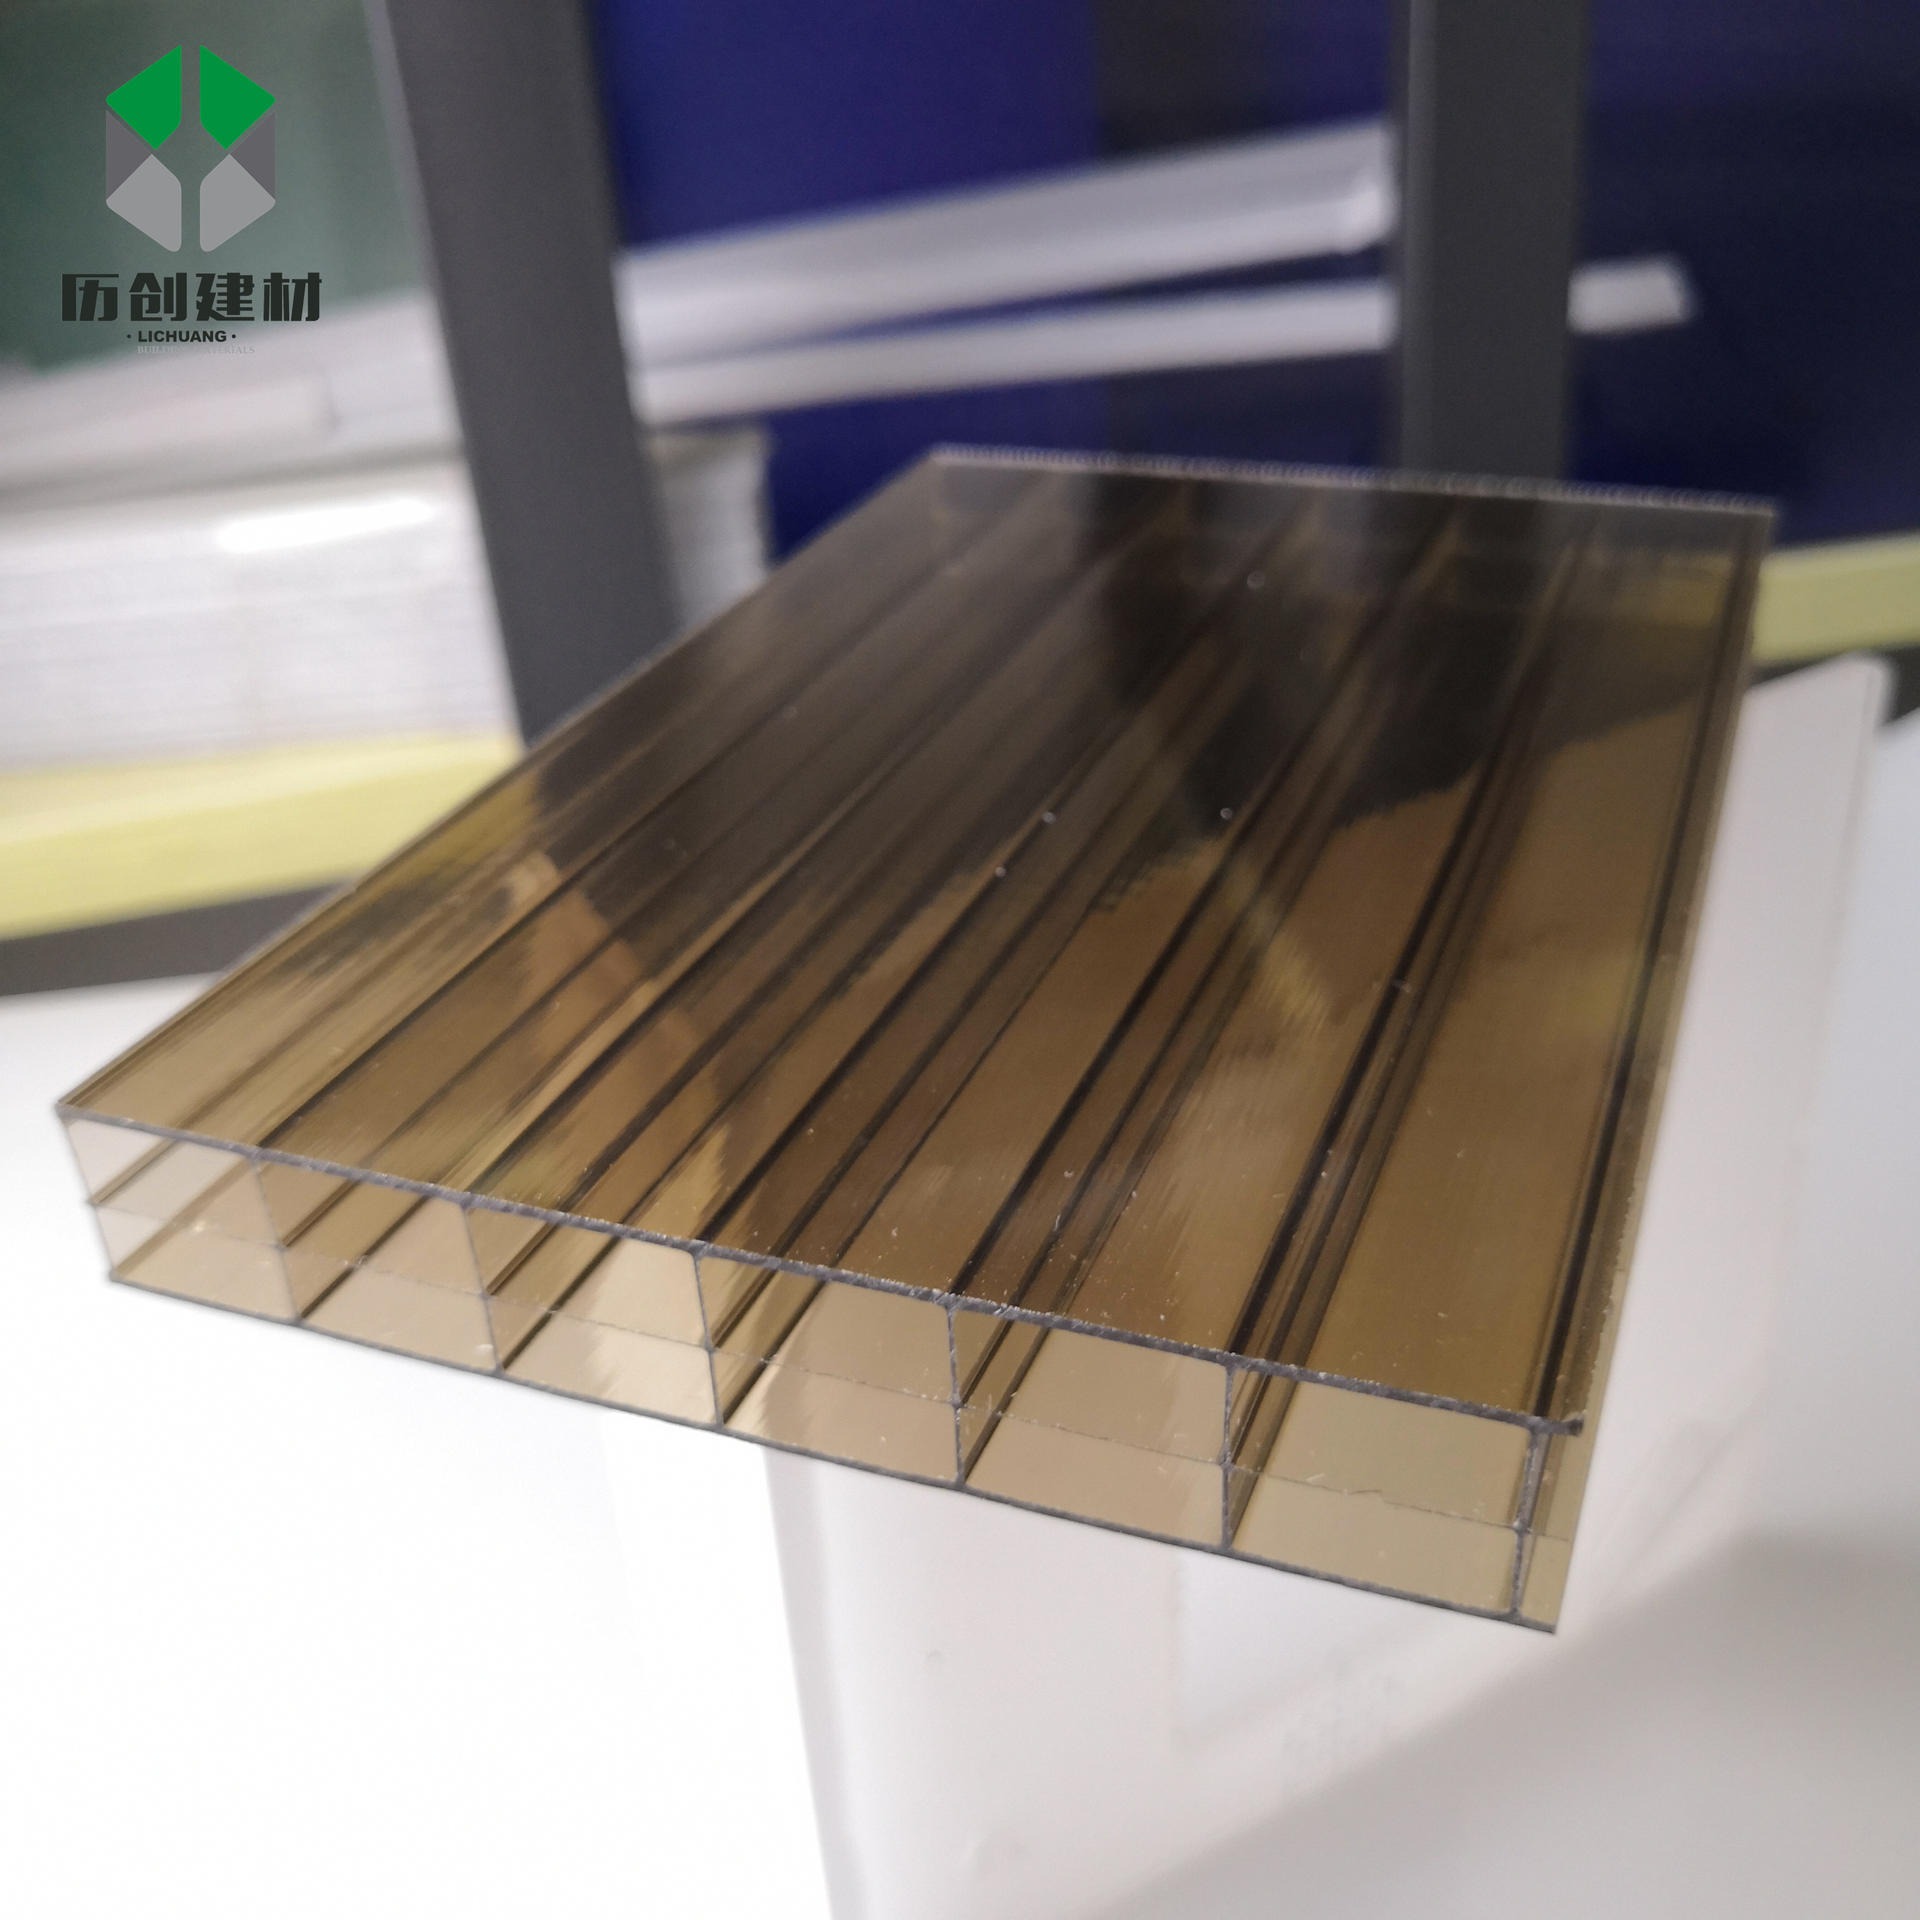 订制生产pc聚碳酸酯阳光板 12mm三层透明板材防腐蚀亮面塑料板广东厂家直供